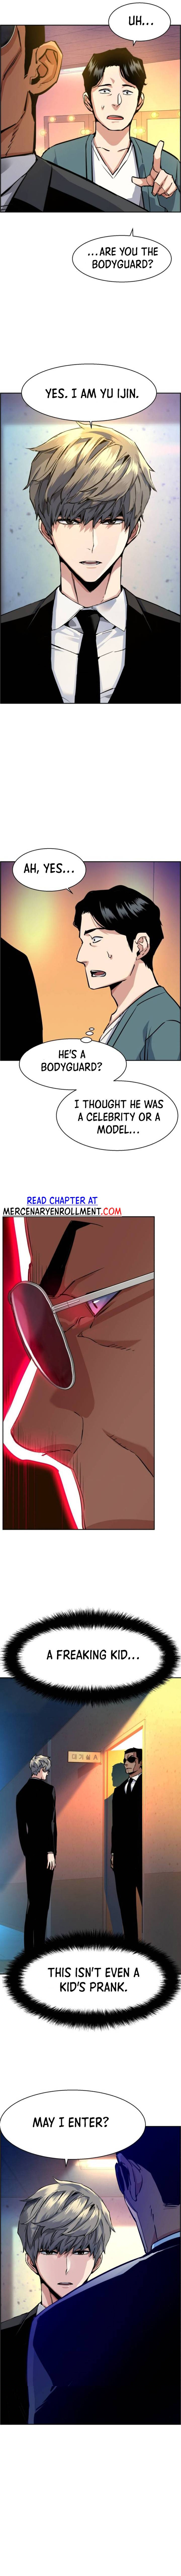 Mercenary Enrollment, Chapter 58 image 08